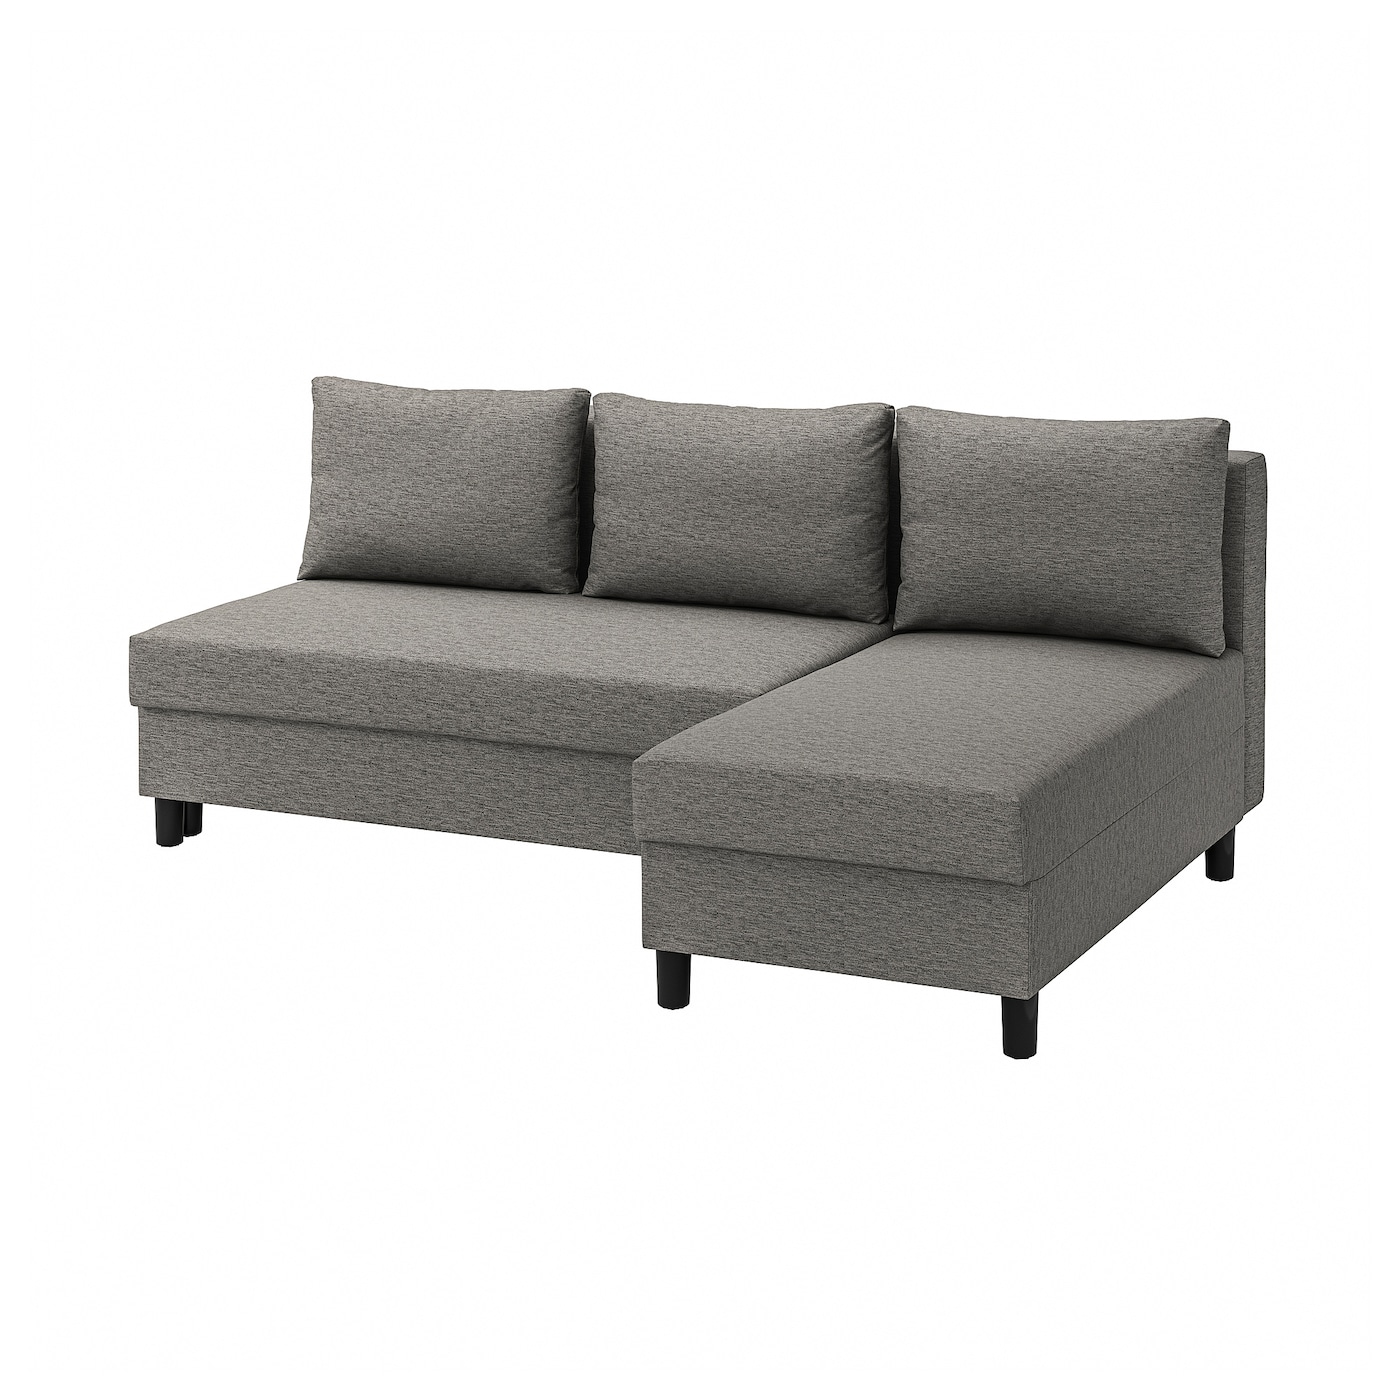 ЭЛВДАЛЕН 3 раскладных дивана + диван, Книса серый бежевый ÄLVDALEN IKEA